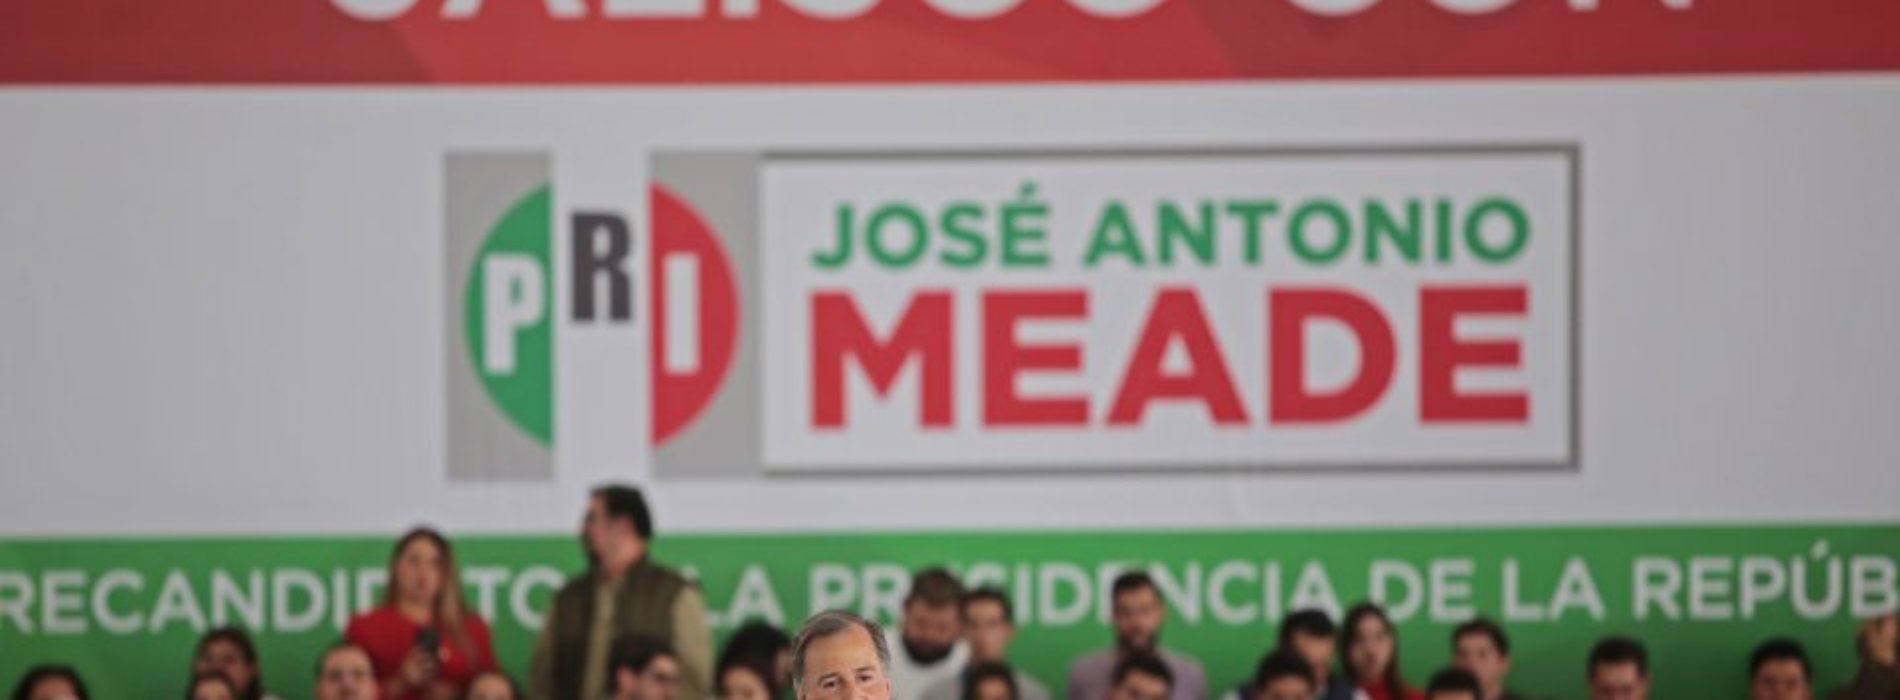 El panorama electoral del PRI y Meade en Jalisco, entre
renuncias y disputas internas